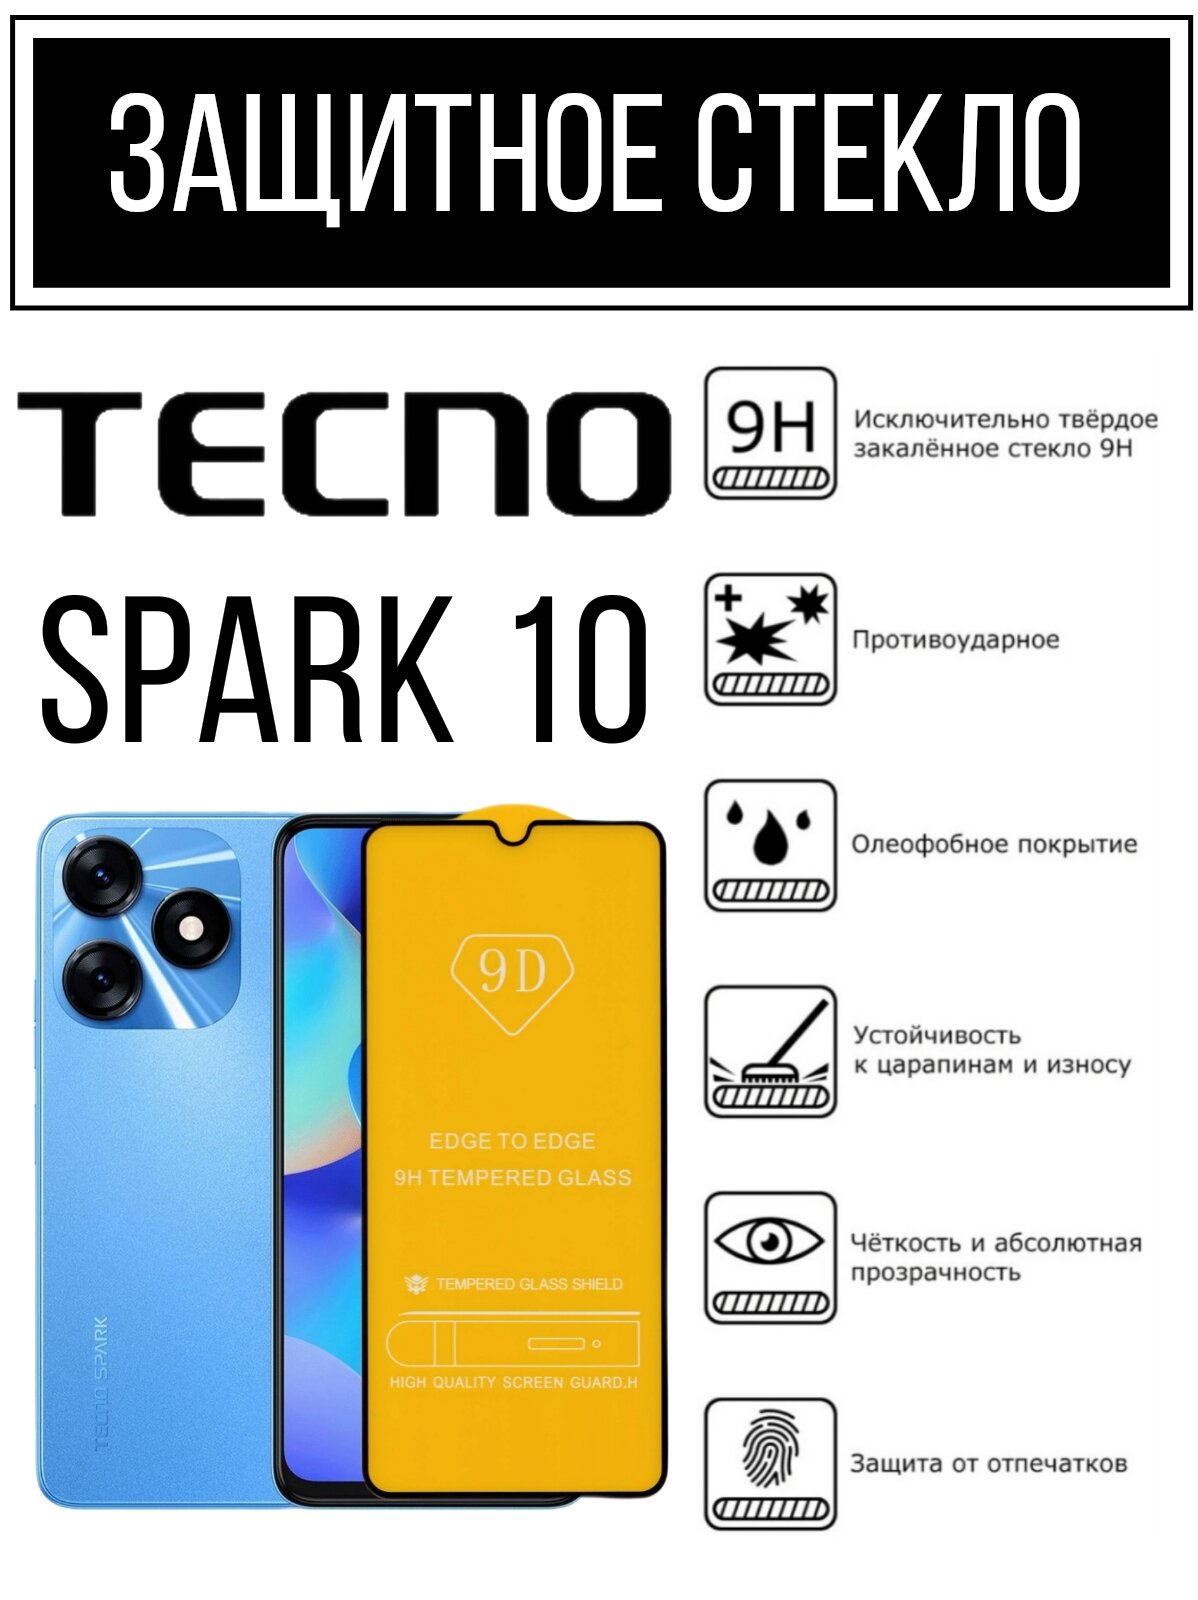 Противоударное закалённое защитное стекло для смартфонов Tecno Spark 10 Тесно Спарк 10